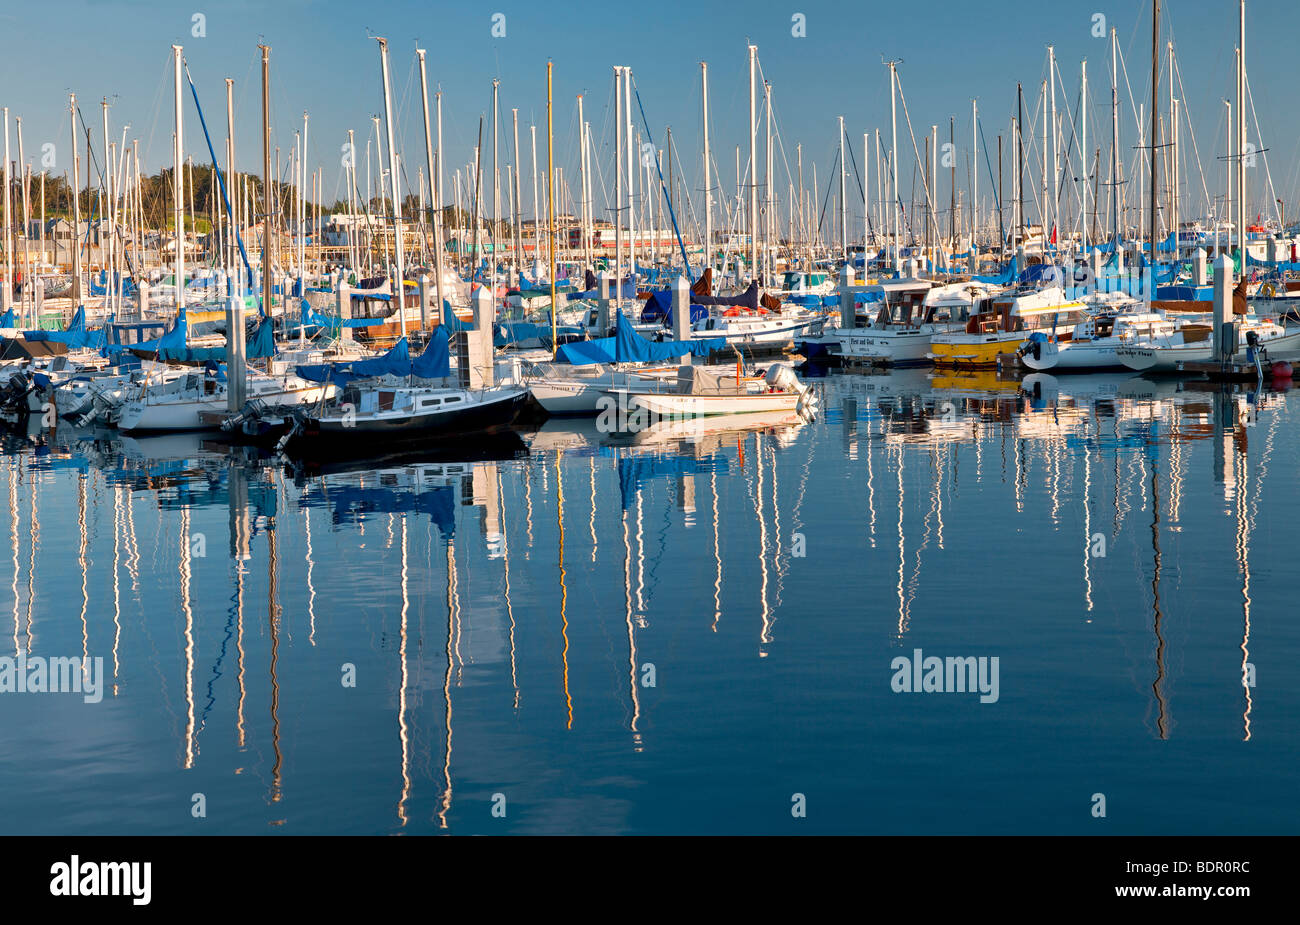 Voiliers au port. Fishermans warf. La baie de Monterey, Californmia Banque D'Images